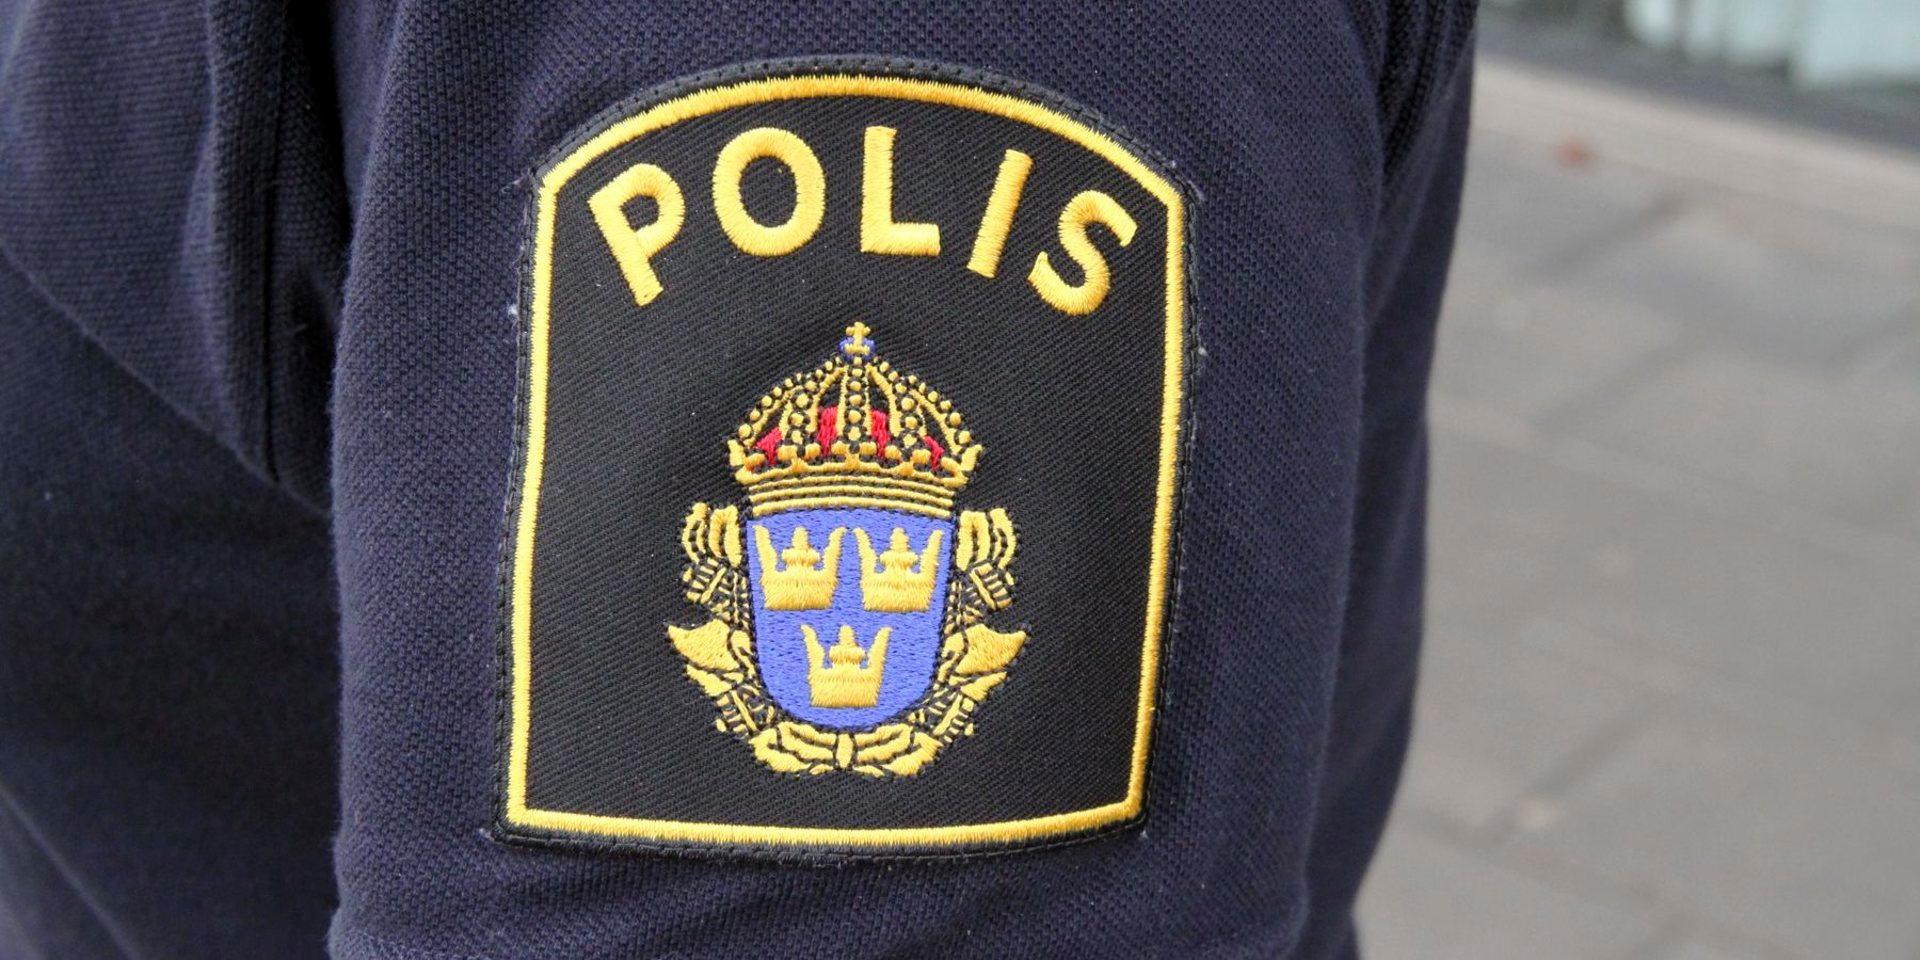 En man i 30-årsåldern som kissade offentligt i Svanesund i torsdags, åtalas nu för förargelseväckande beteende.